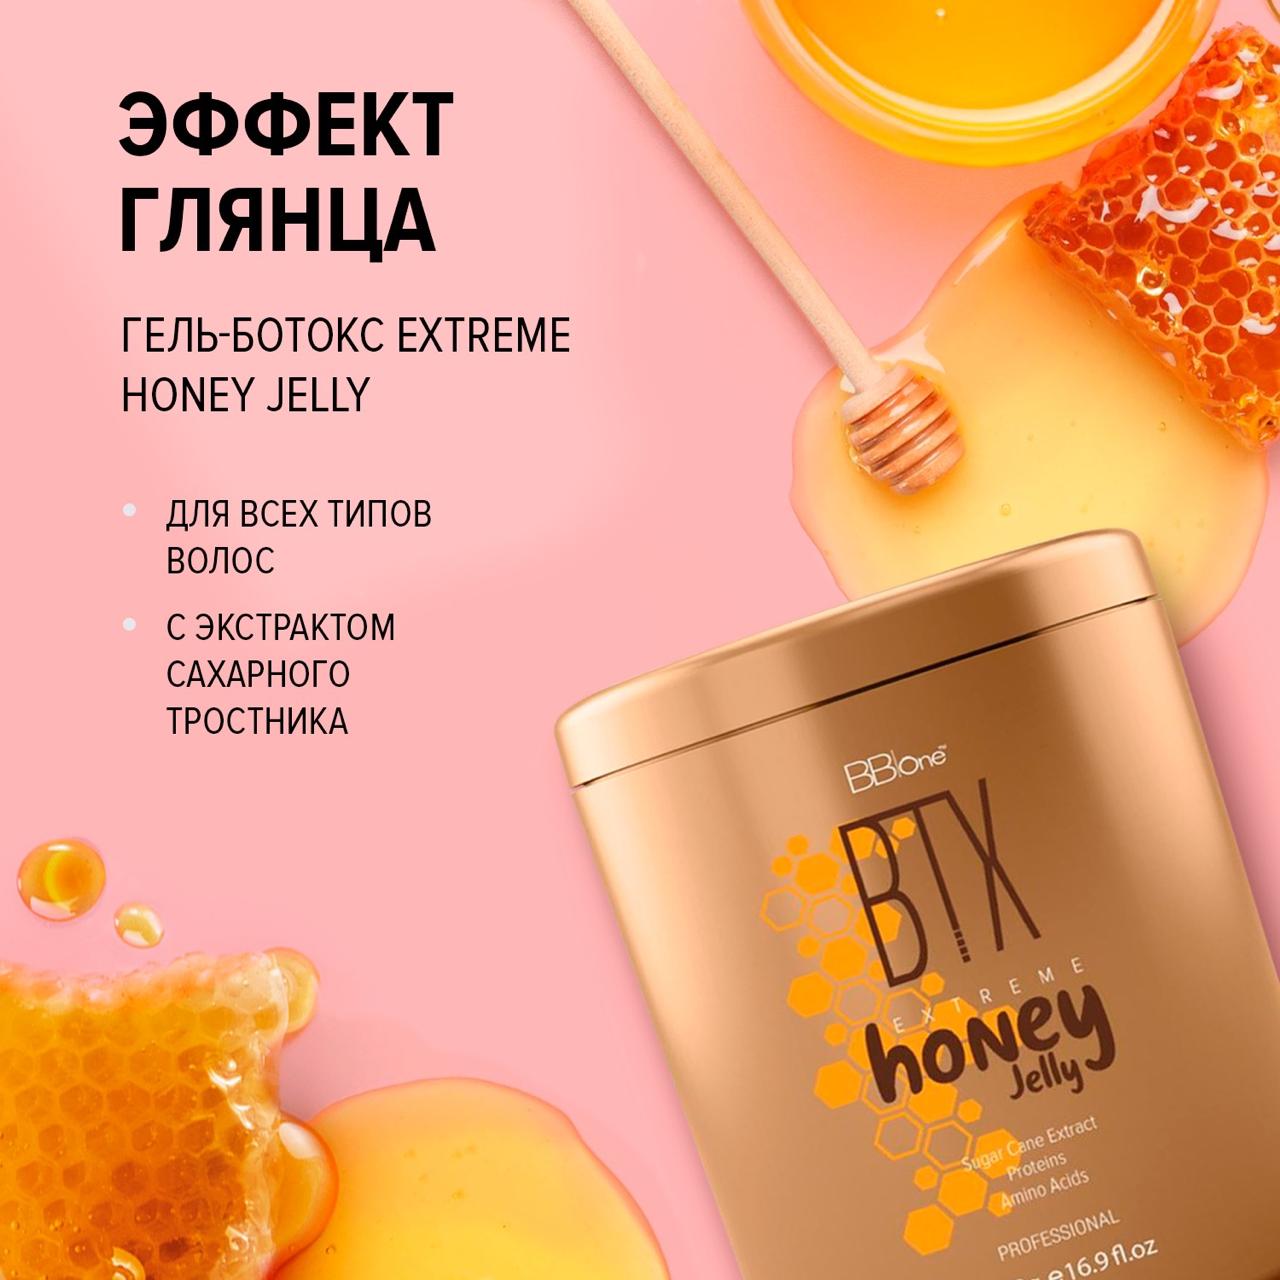 BB one / Ботокс для волос с эффектом глянца Extreme Honey Jelly, 500 мл.